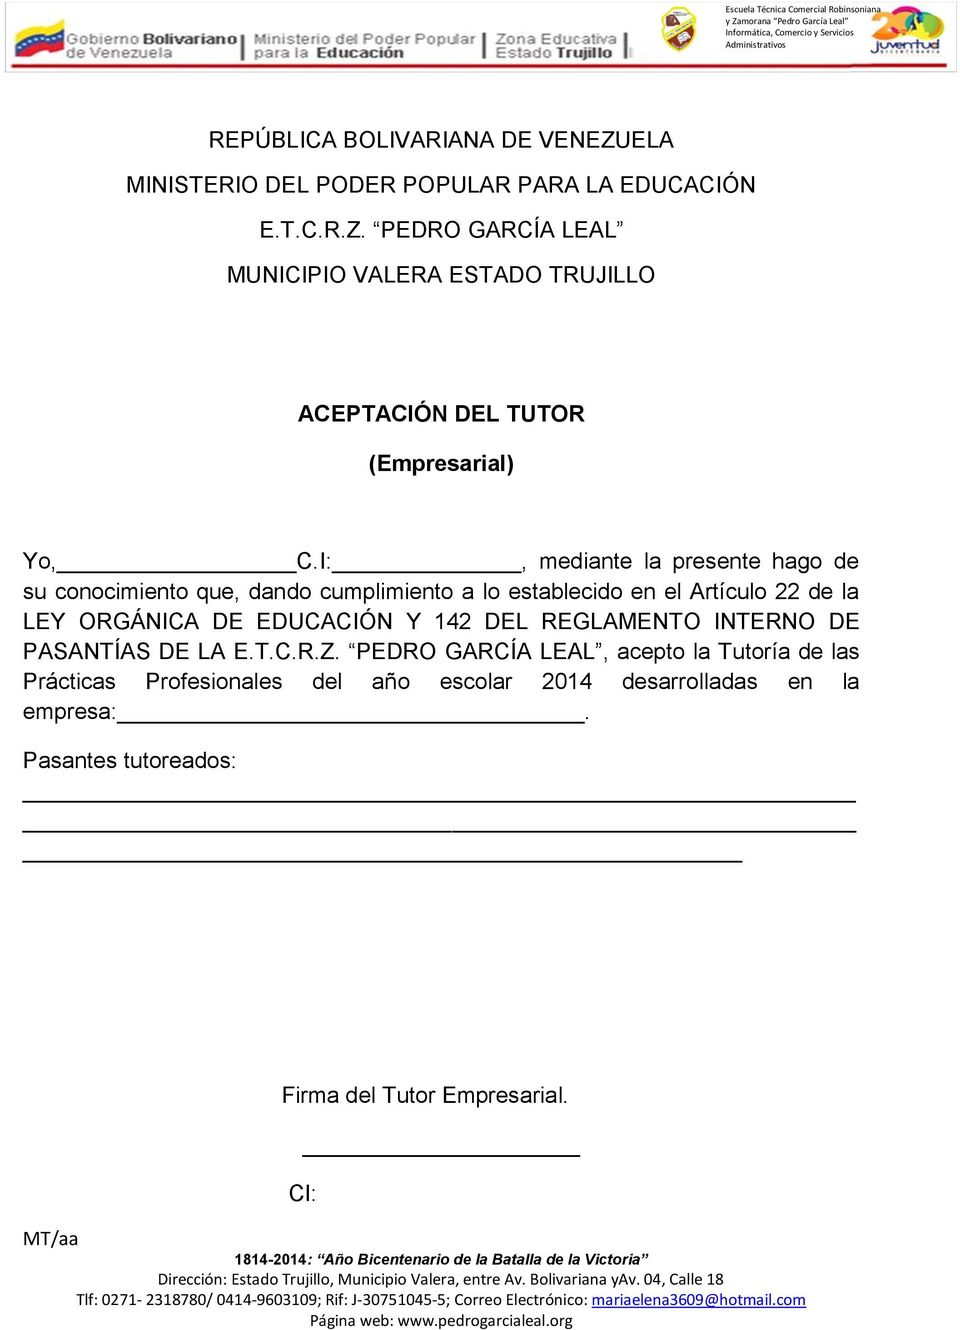 Artículo 22 de la LEY ORGÁNICA DE EDUCACIÓN Y 142 DEL REGLAMENTO INTERNO DE PASANTÍAS DE LA,